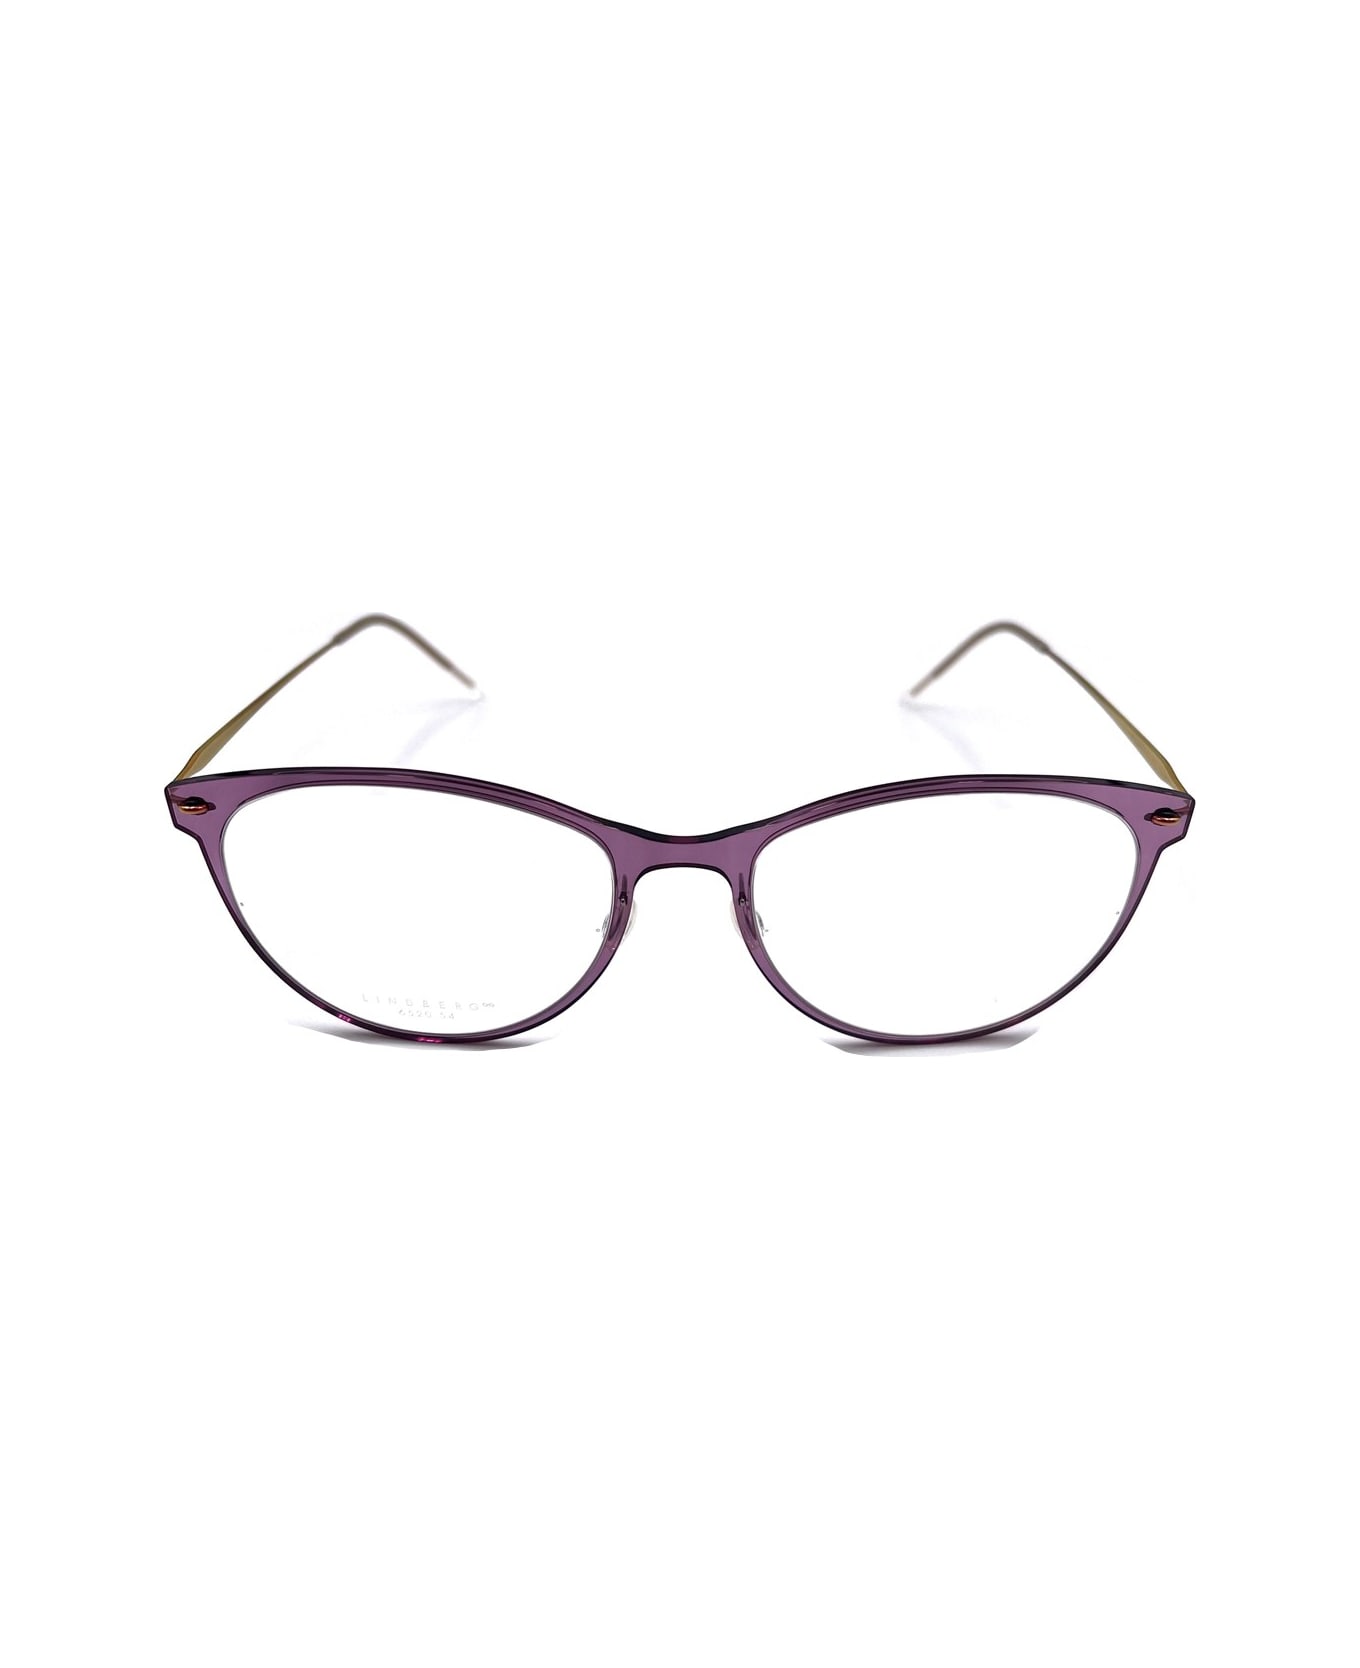 LINDBERG N.o.w. 6520 Glasses - Viola